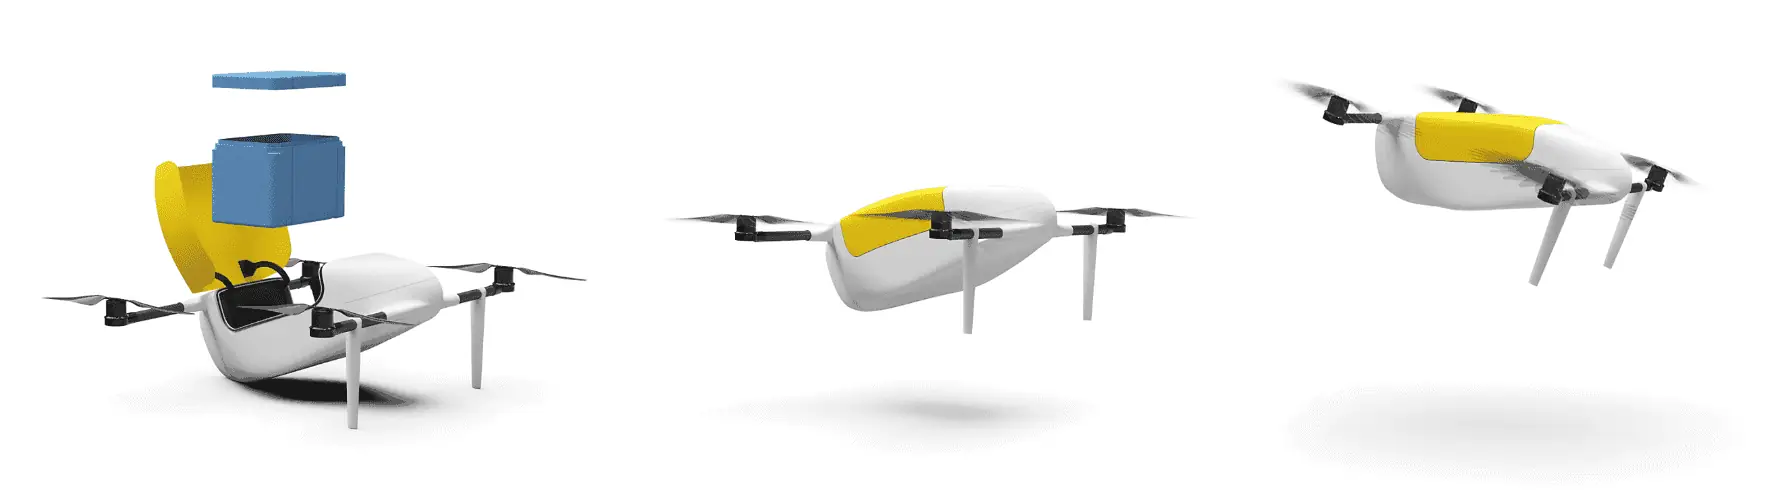 Deldro il drone svizzero per trasporto merci, drone svizzero per trasporto merci